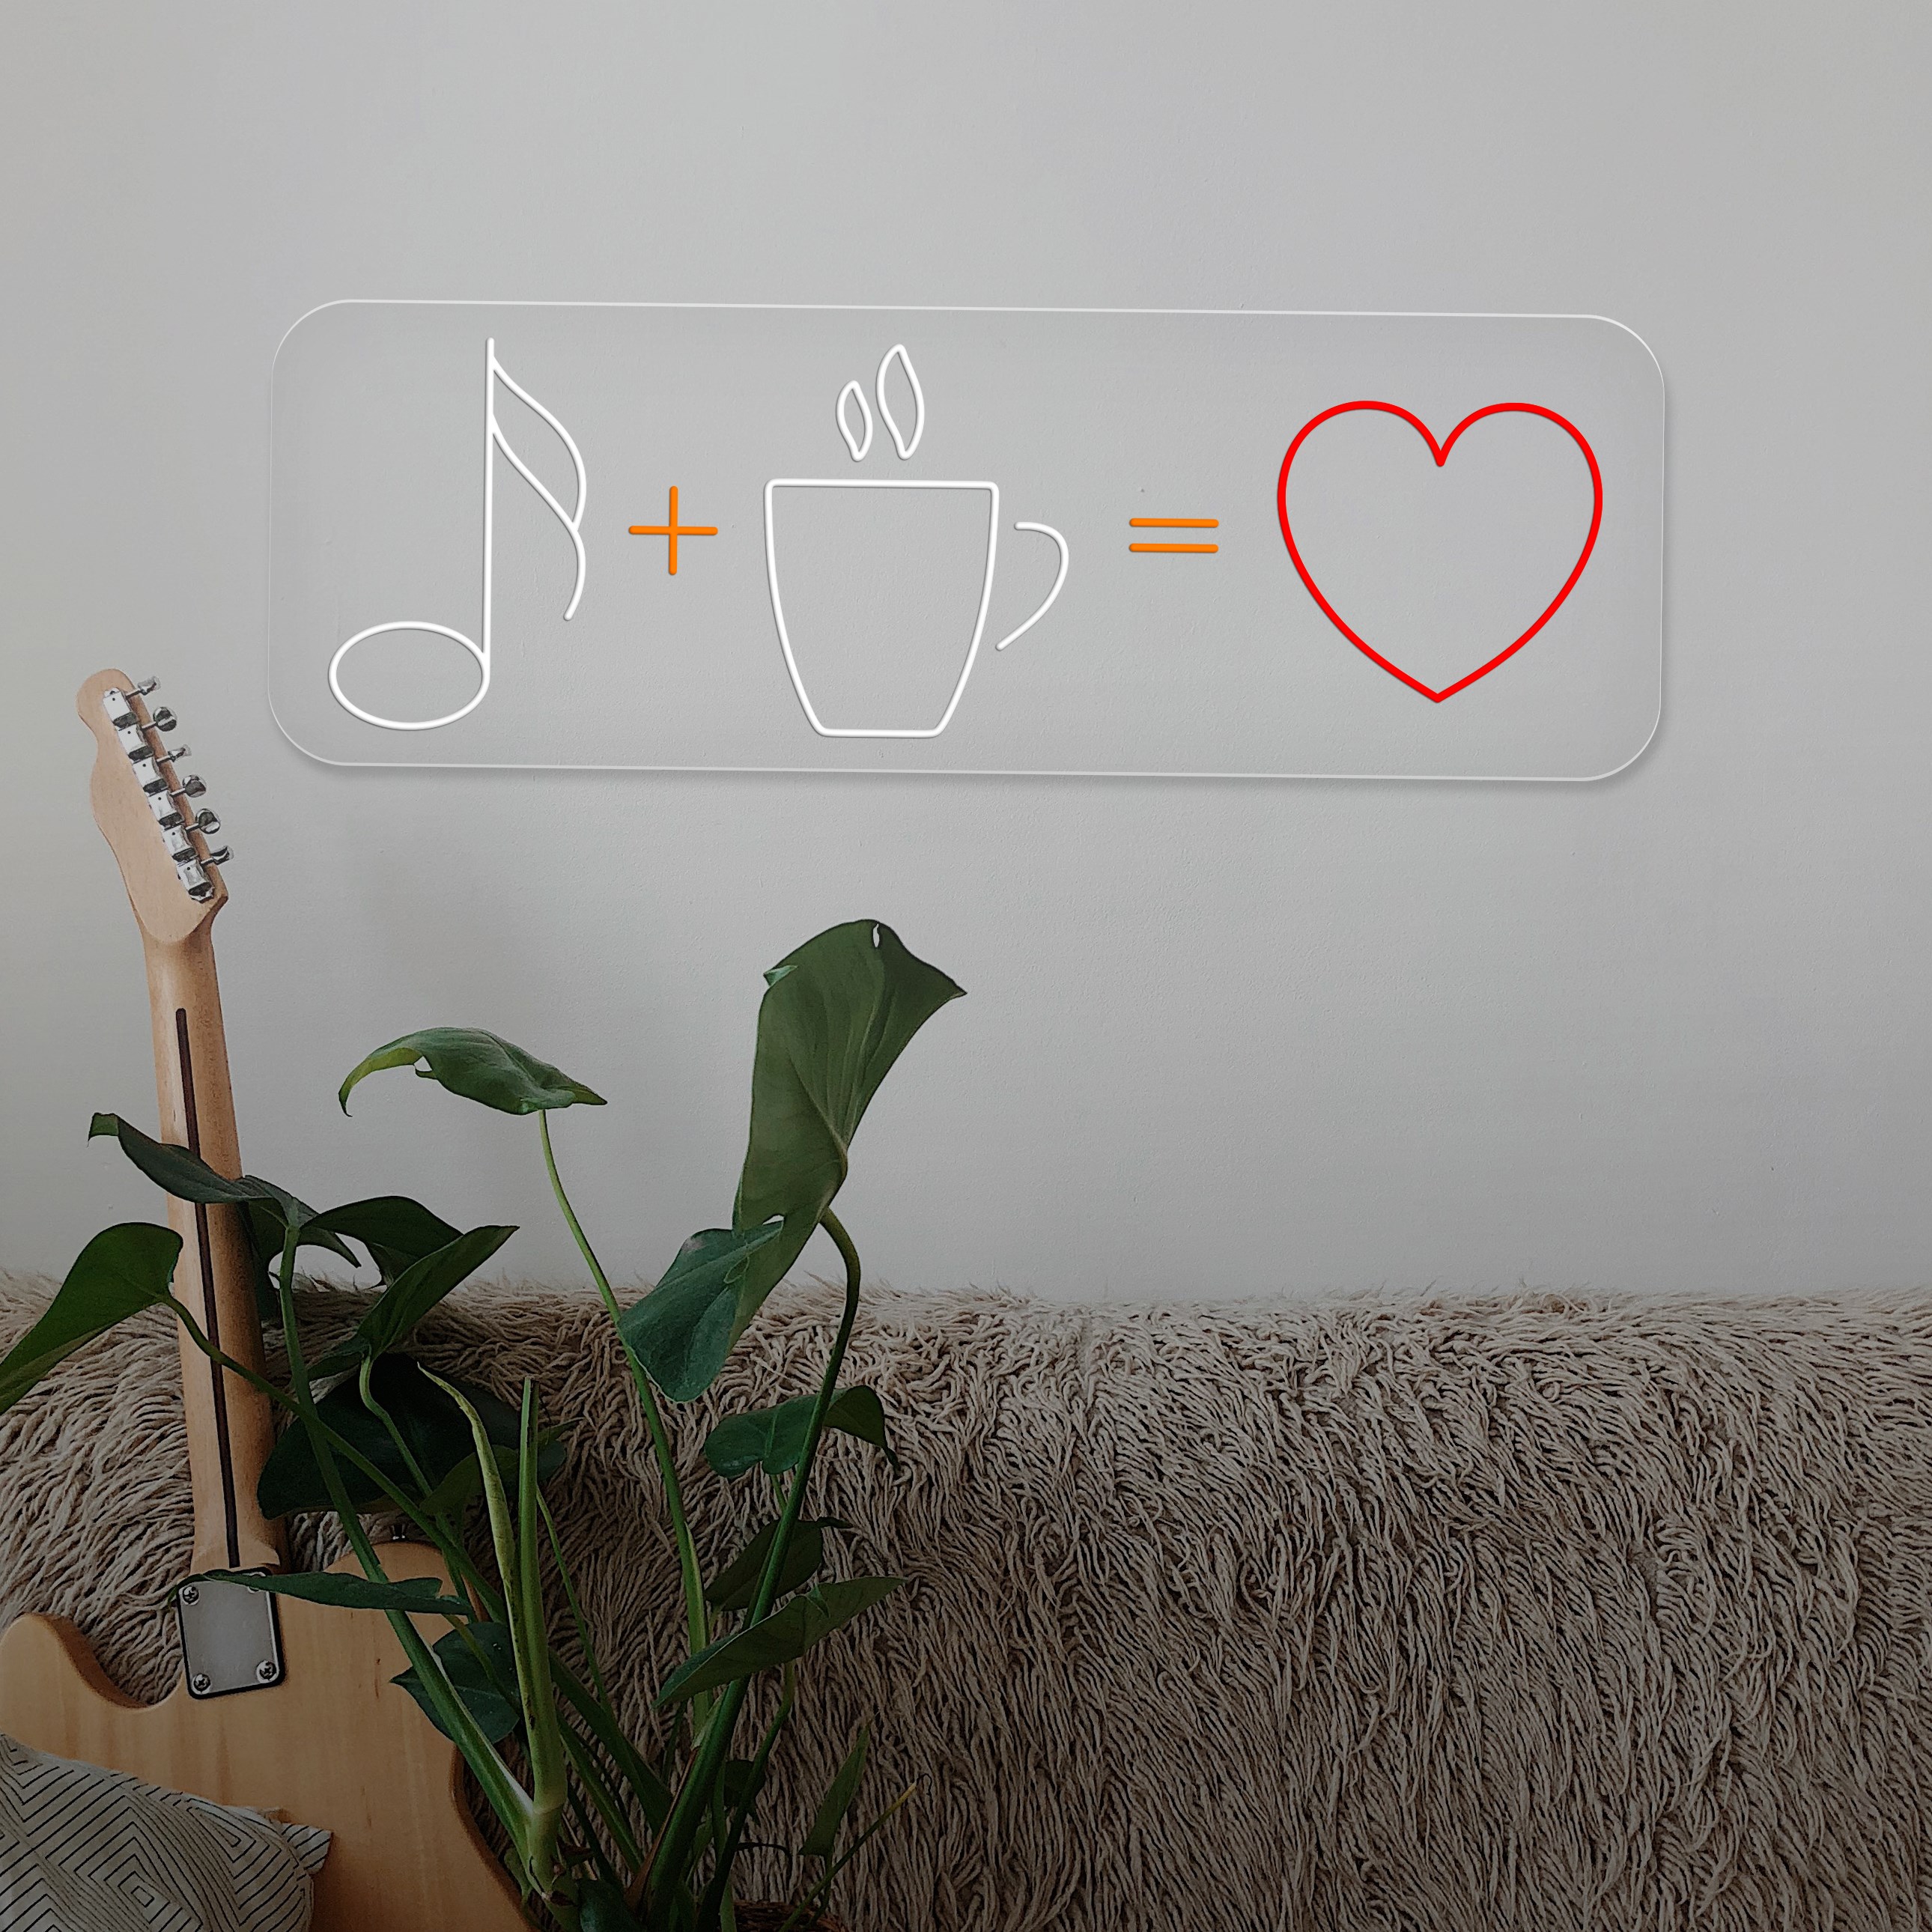 Bild von Neon "Coffee + Music = Love"